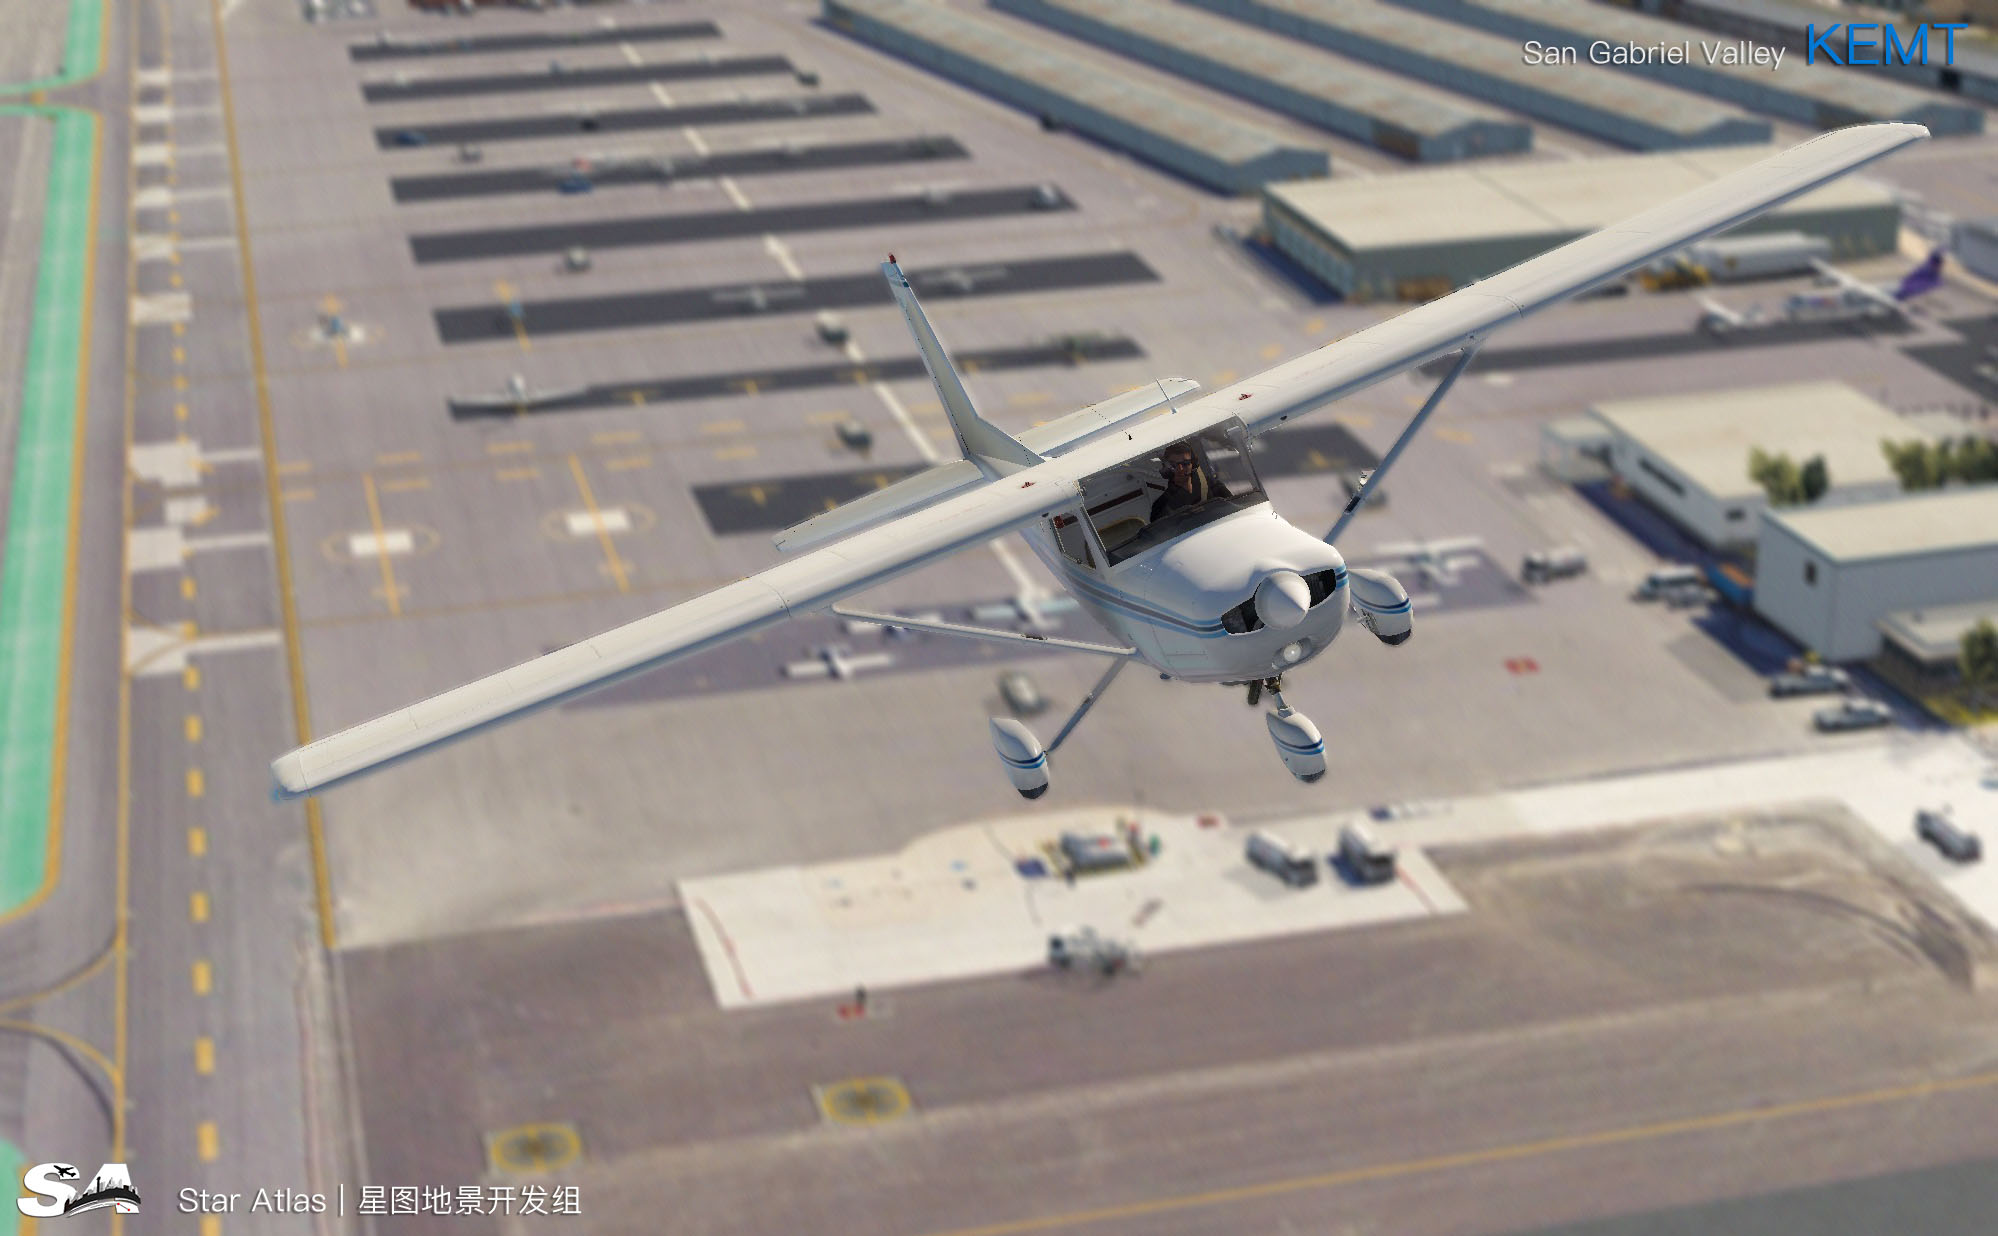 【X-Plane】KEMT-圣盖博谷机场 HD 1.0-8864 